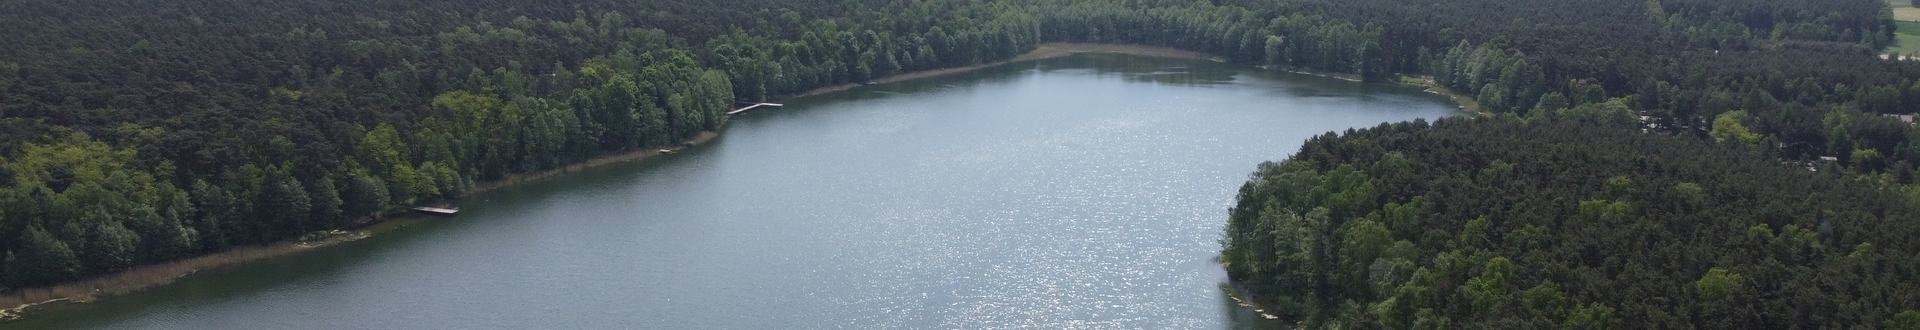 Jezioro Skrzyneckie z dron